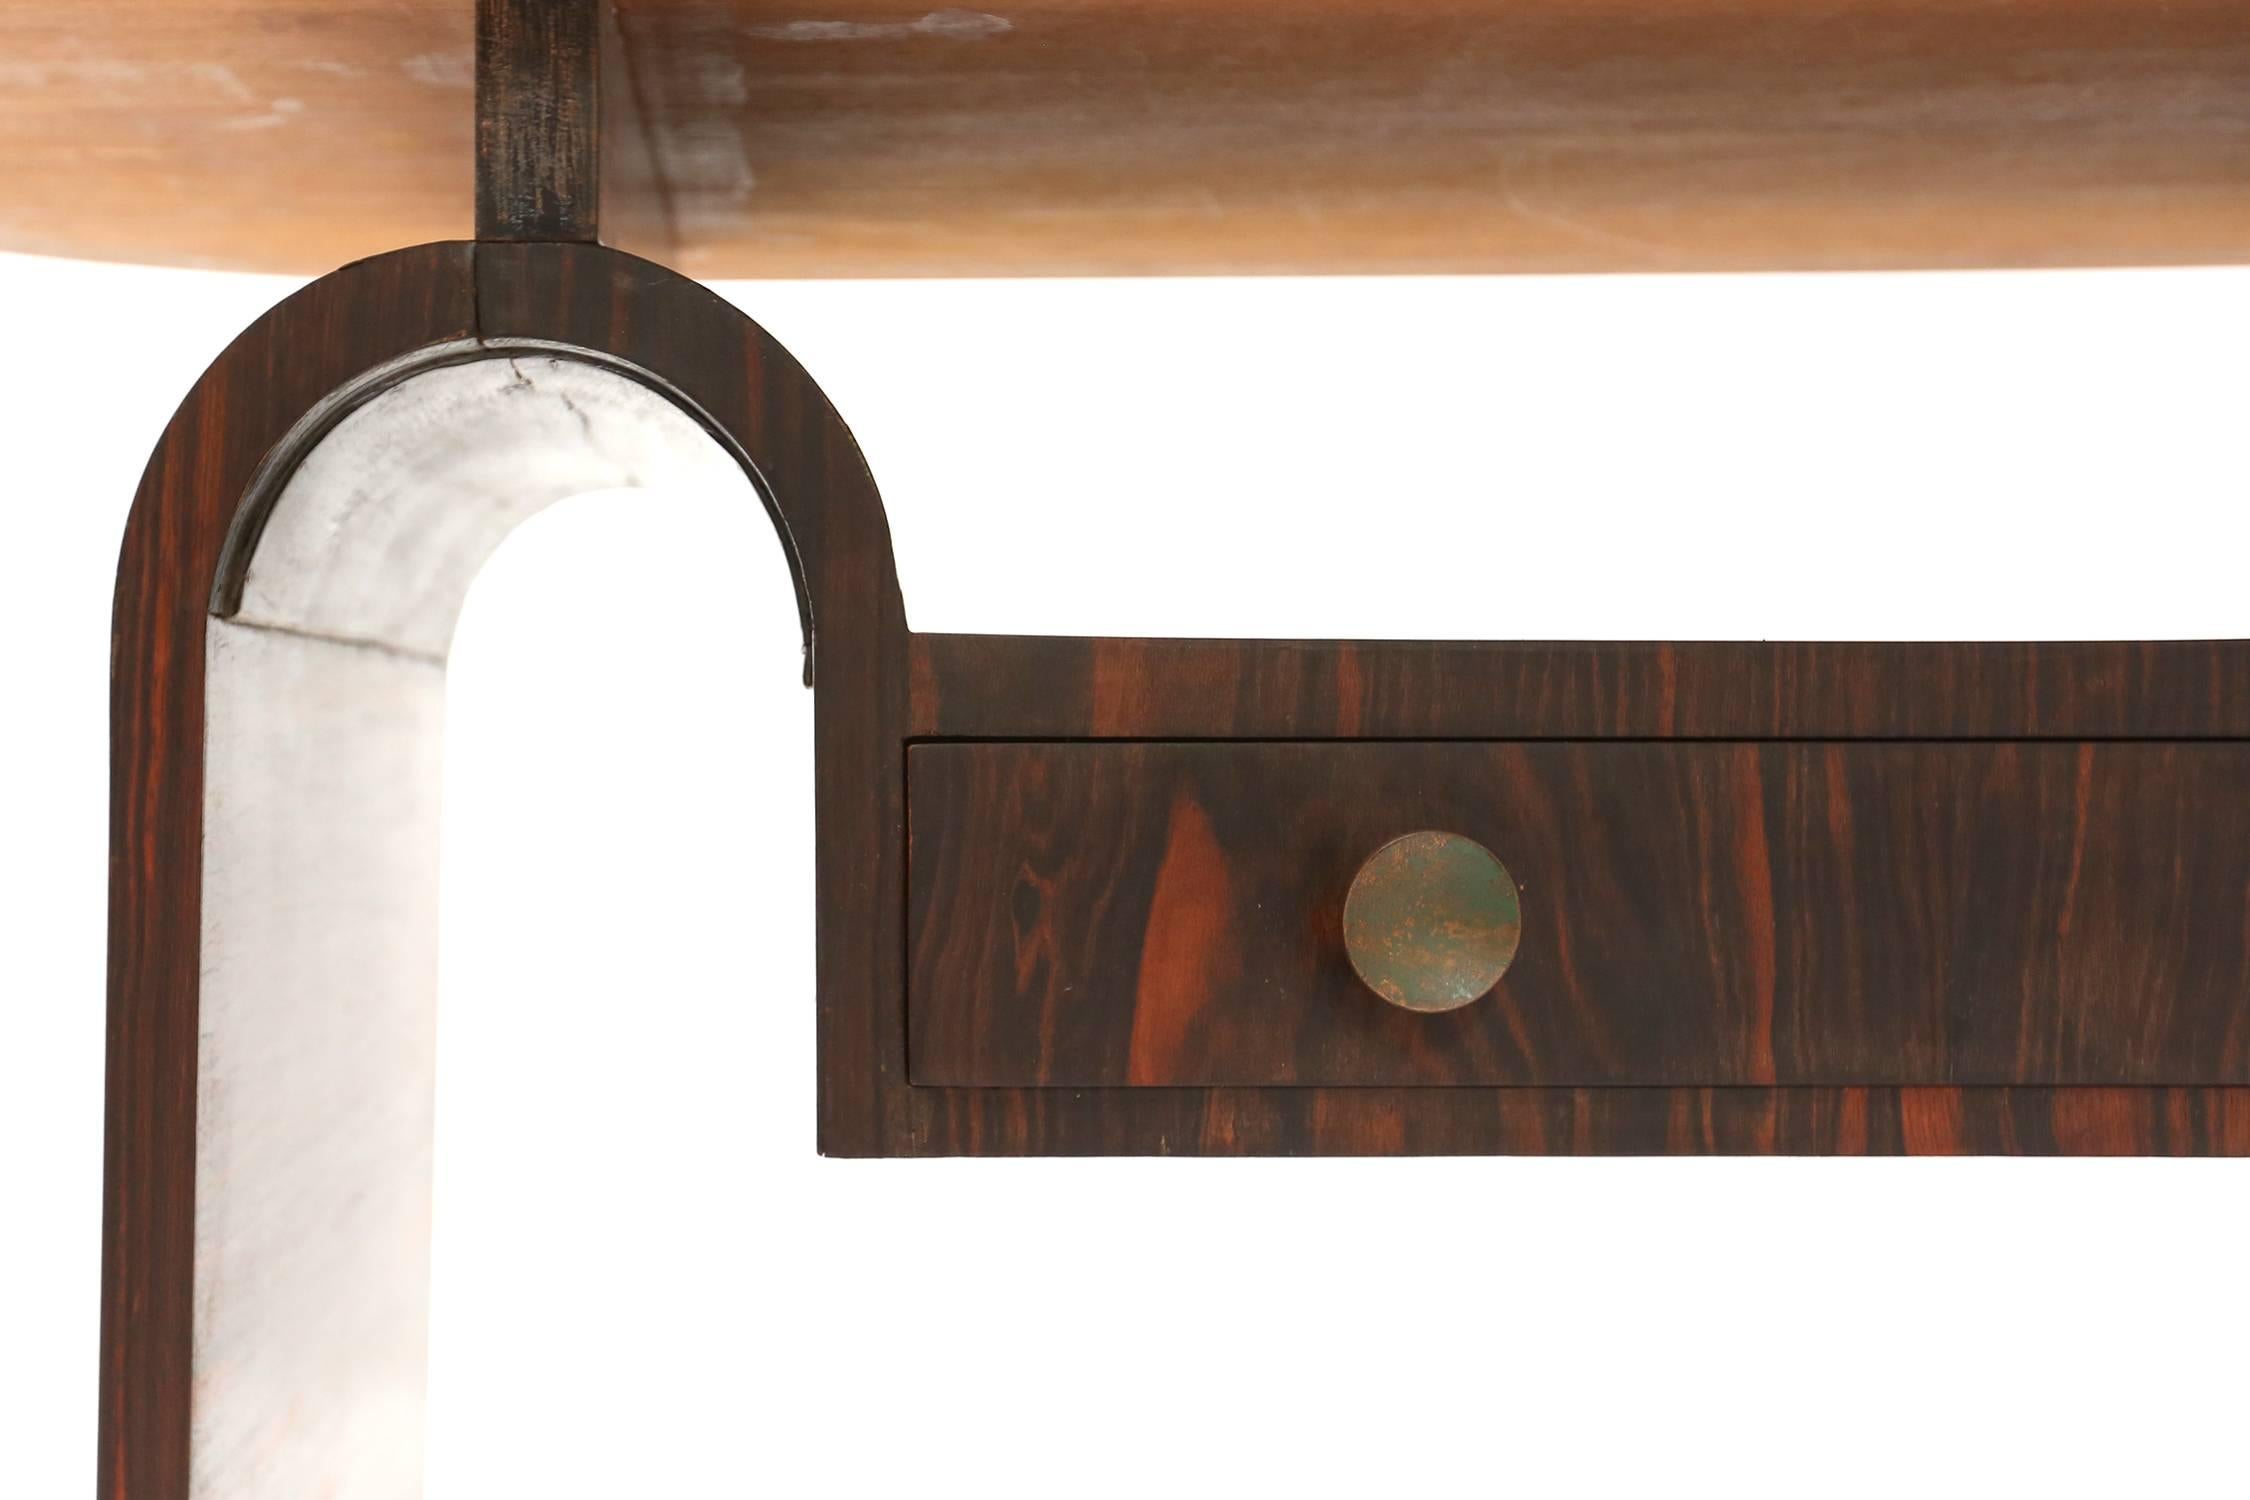 Art Deco table | Maccasar | Bronze
Arnold Bueno-de-Mesquita for Metz & Co
W 121 cm |  D 46 cm | H 55 cm
